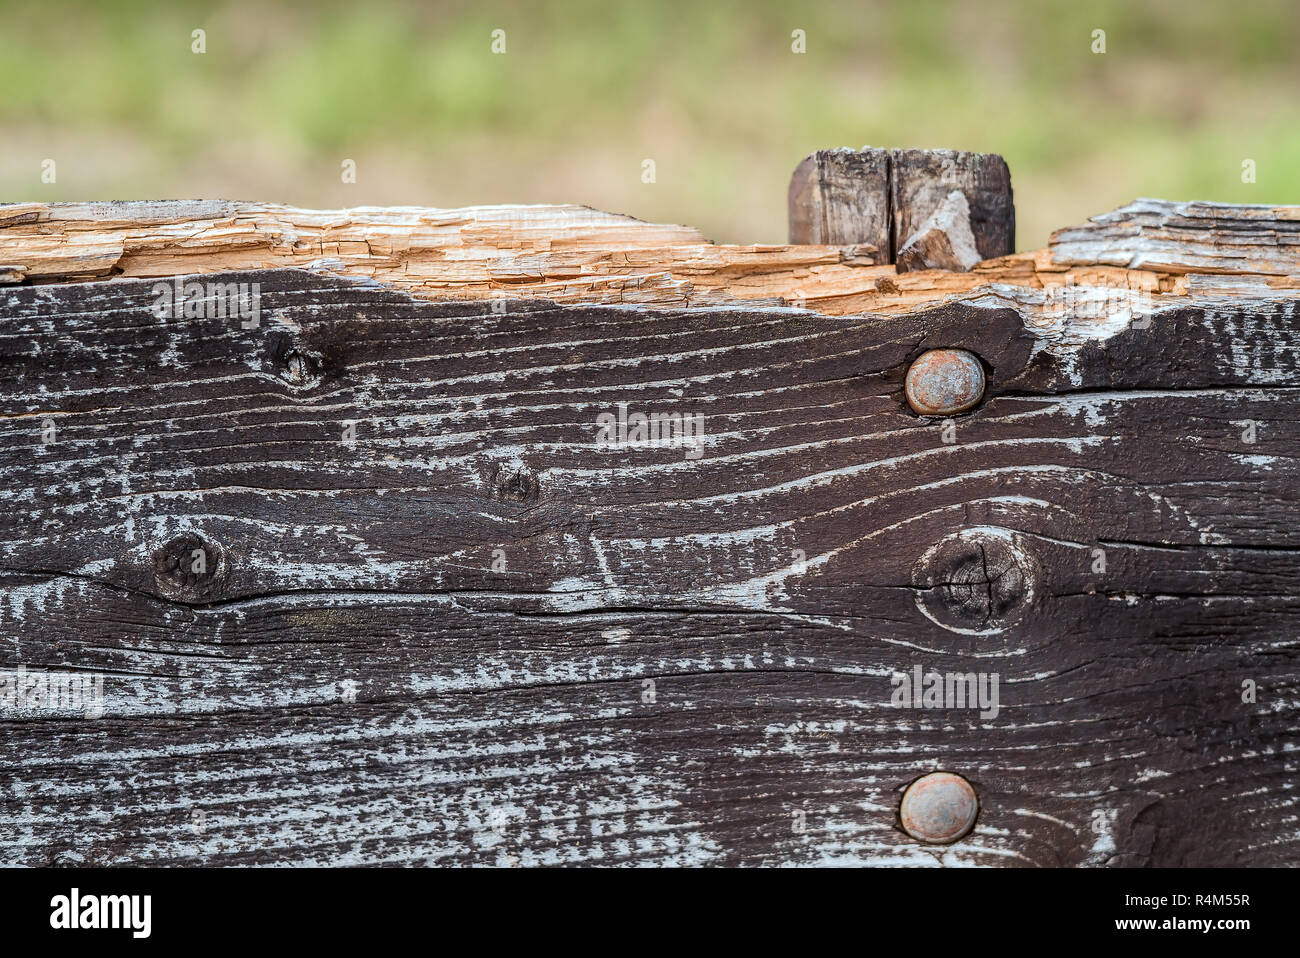 Closeup détail en une grossière altérés et rompu dans le cadre d'un banc en bois rustique avec des personnes âgées, de la surface fissurée, sombre peinture décolorée naturelles Banque D'Images